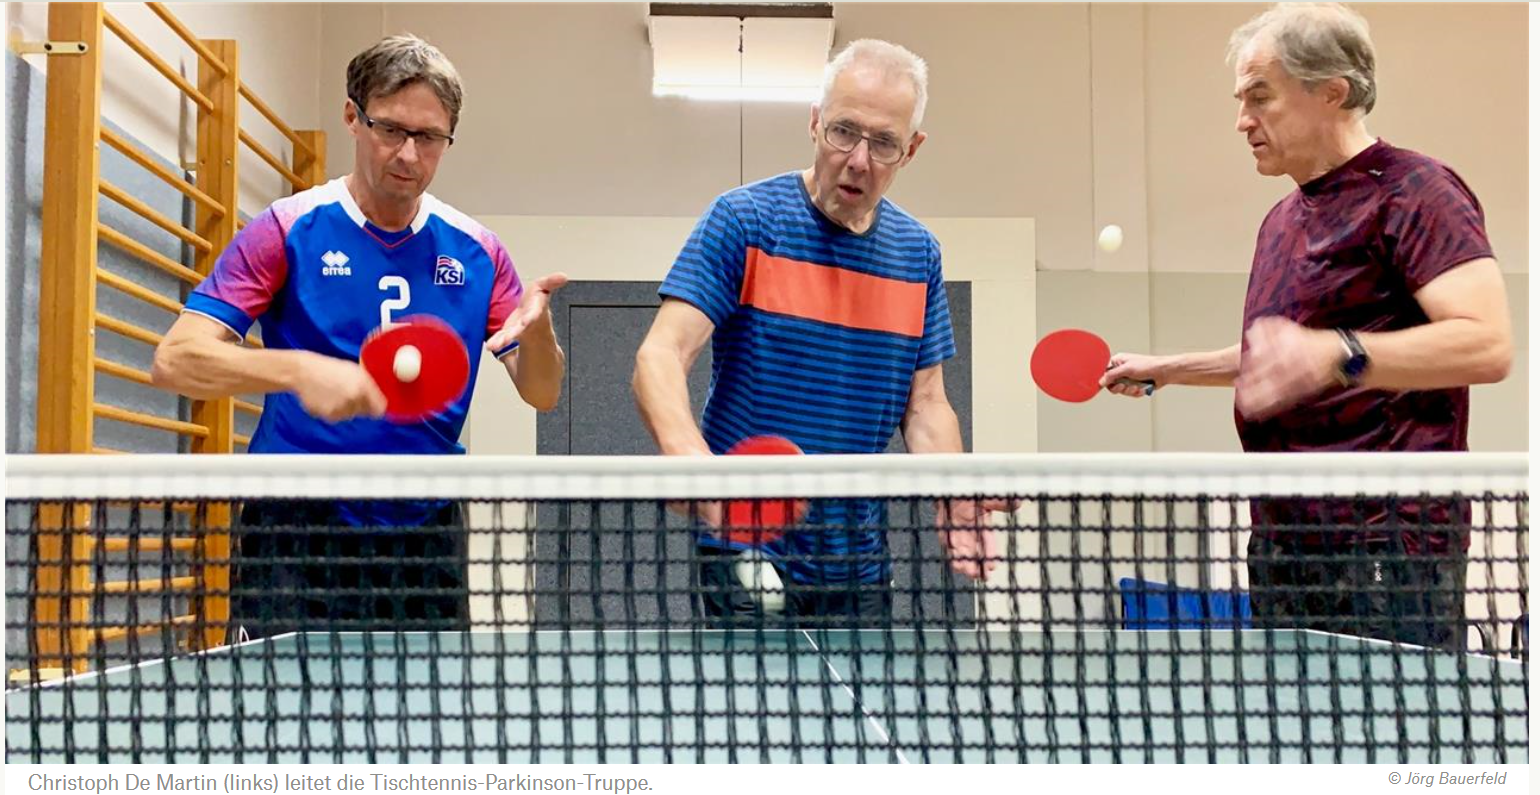 Hilfe bei Parkinson: Dortmunder gründen Tischtennisabteilung